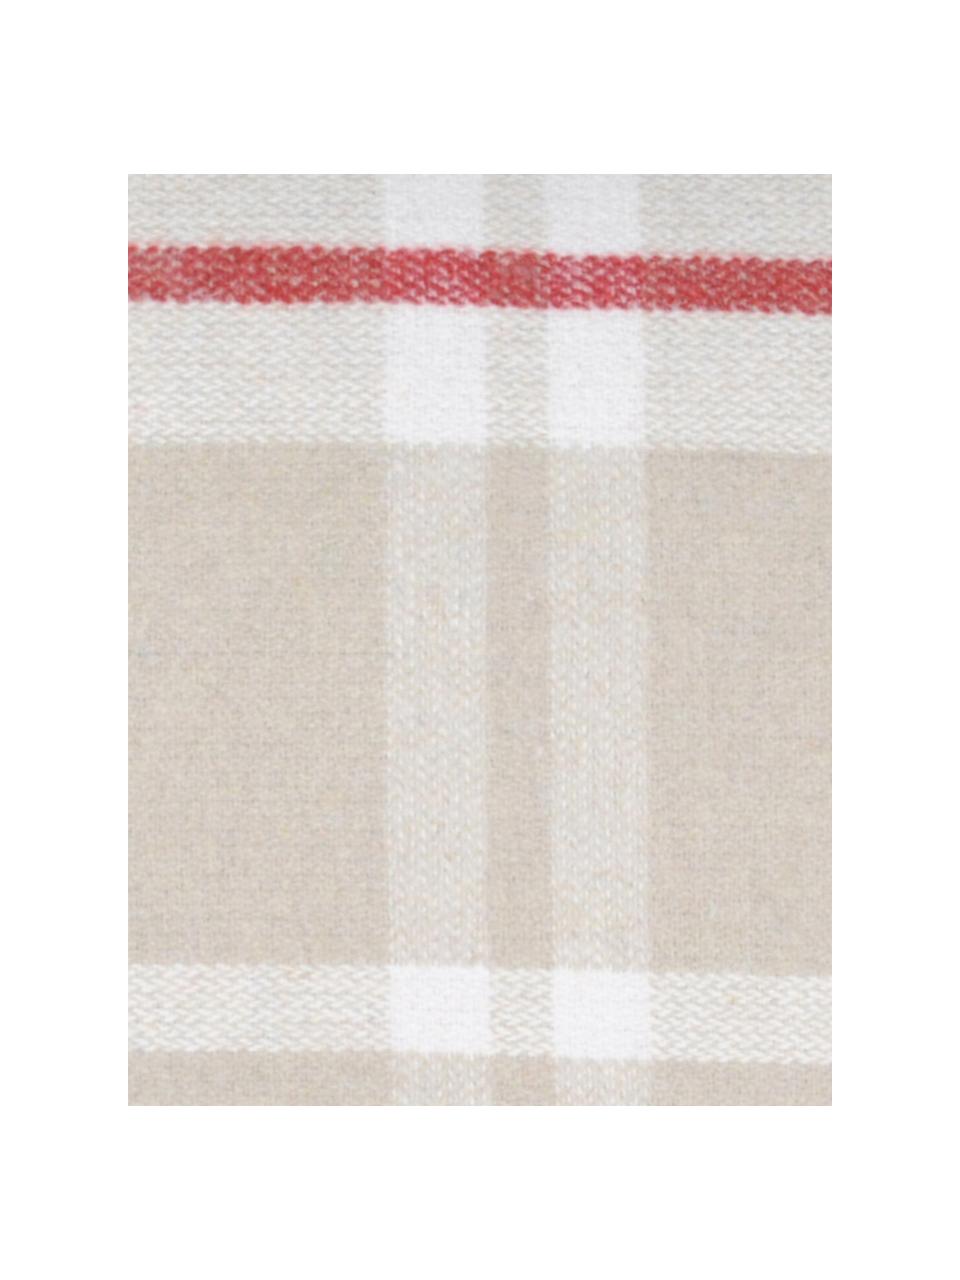 Karierte Kissenhülle Granier, 95% Polyester, 5% Wolle, Beige, Weiß, Rot, 40 x 40 cm